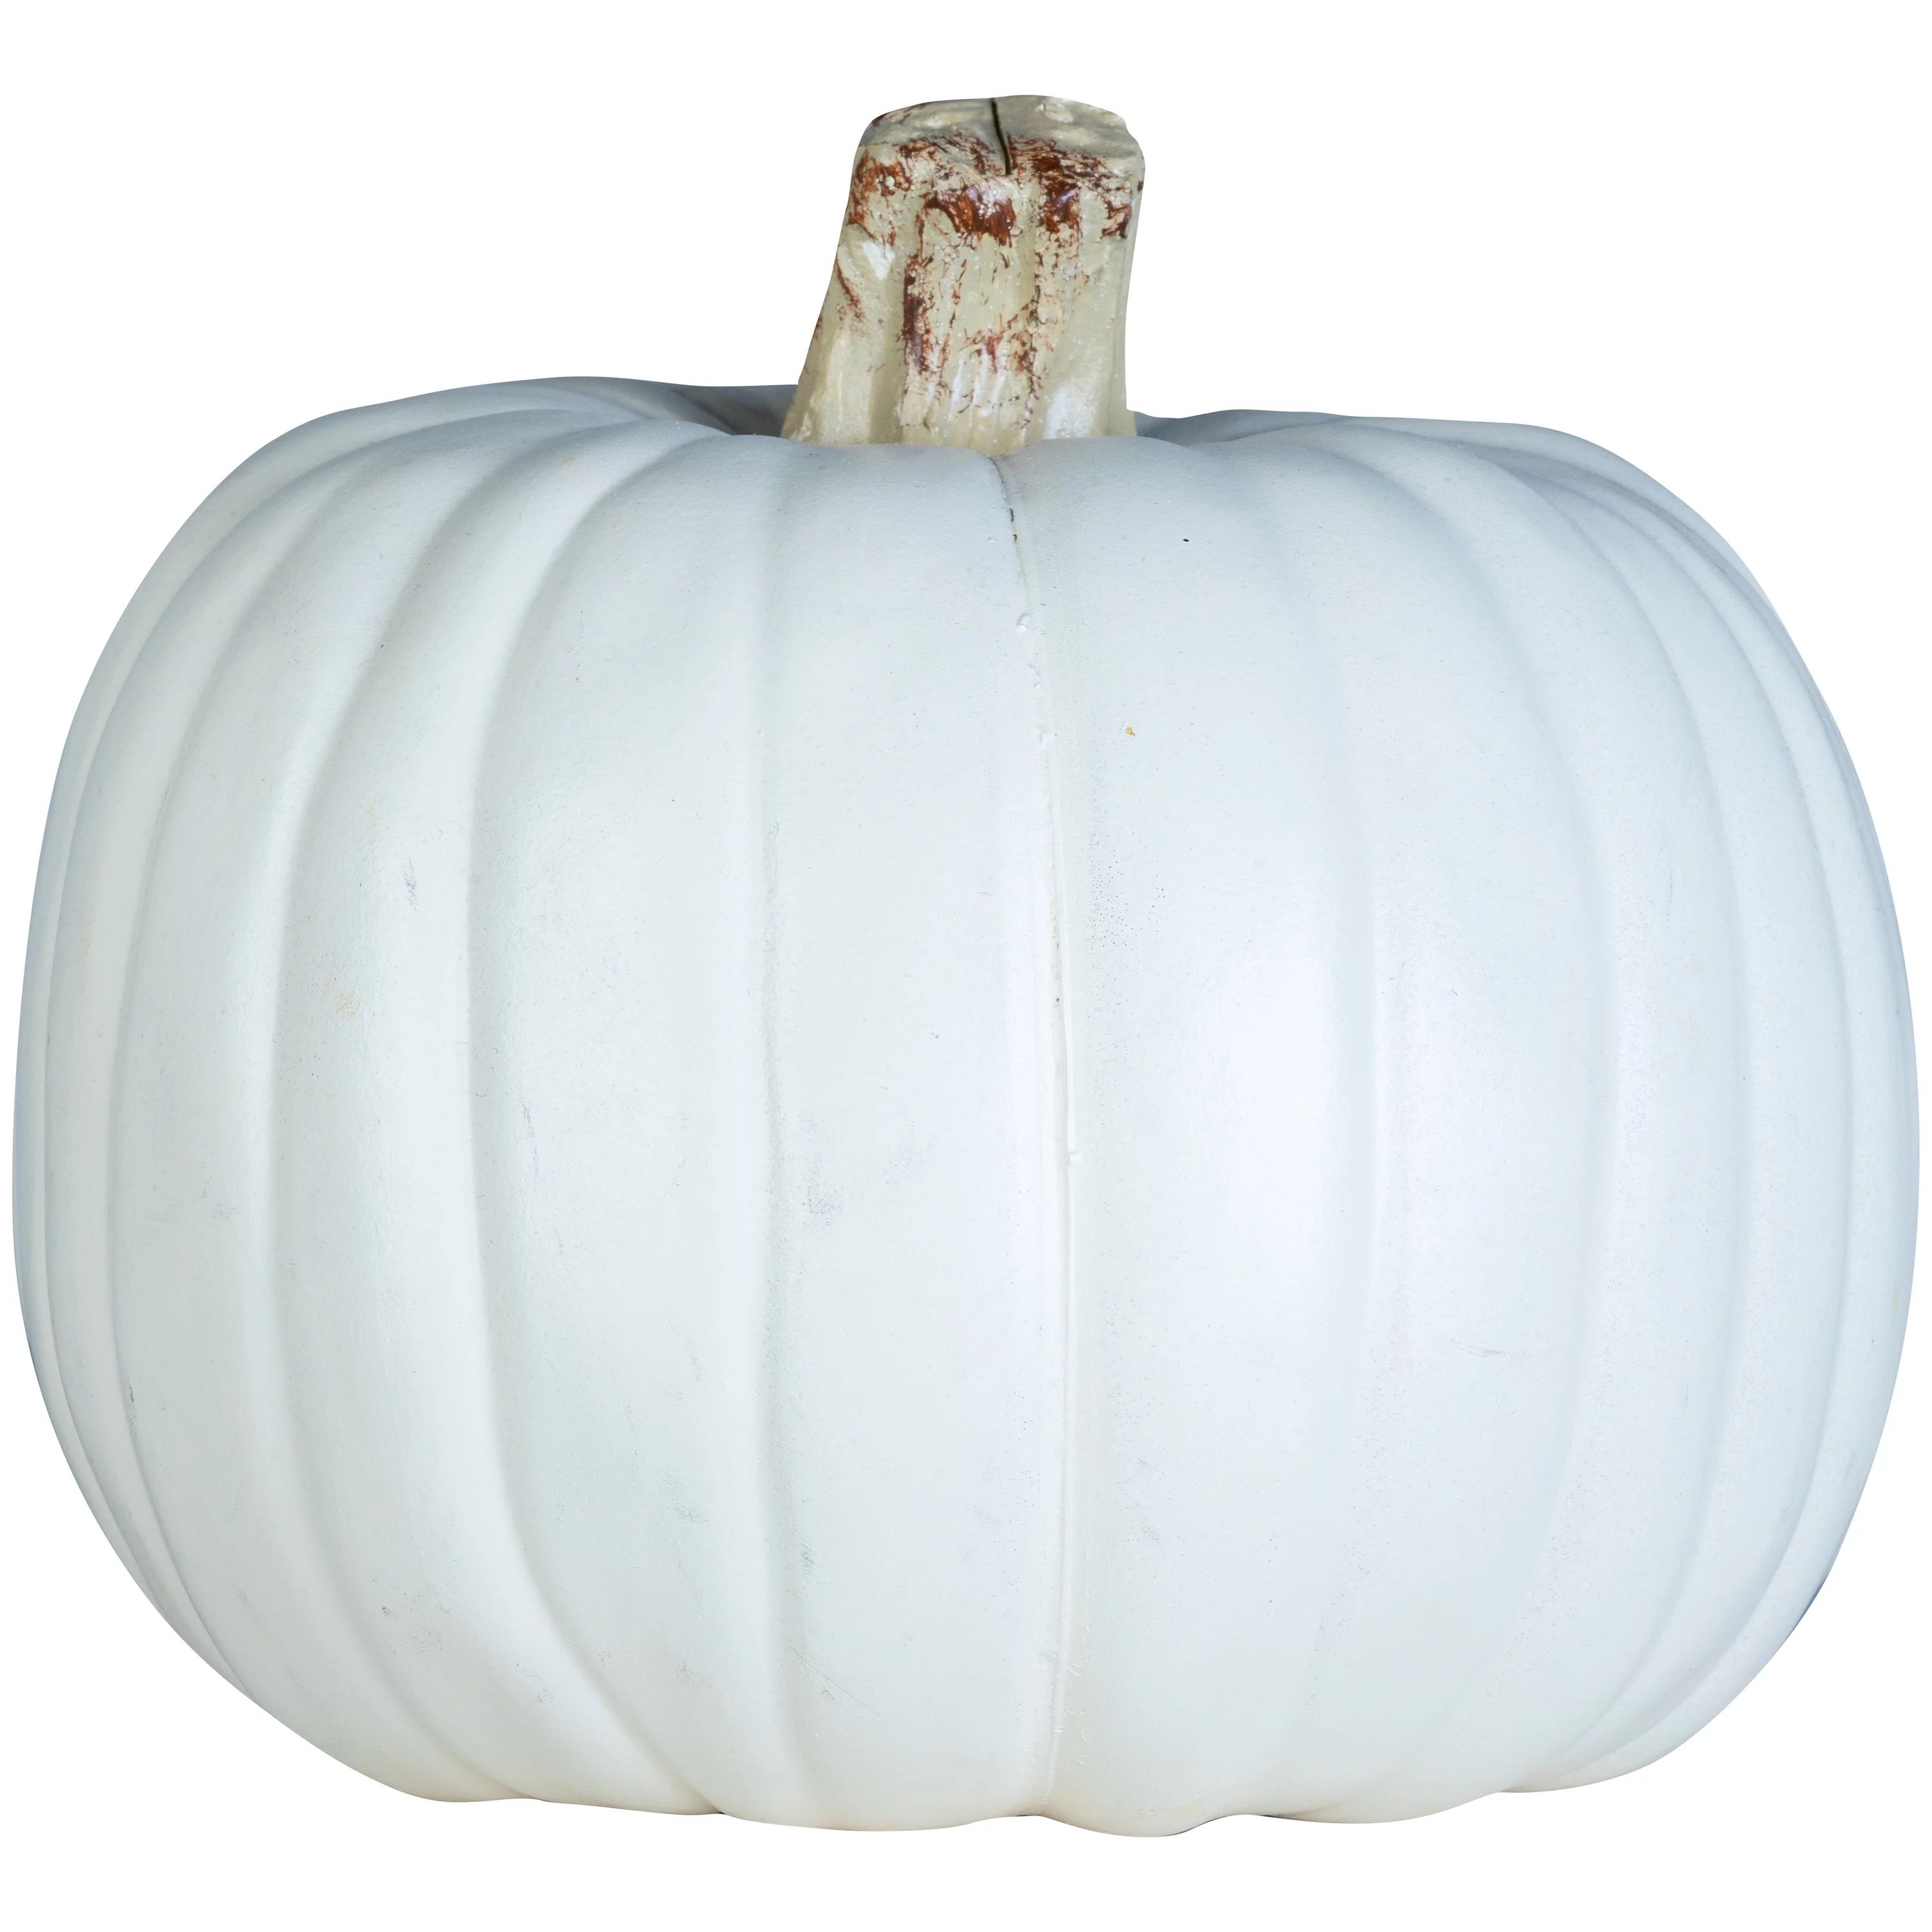 Halloween White Craft Pumpkin Pallet, 9 in, by Way To Celebrate | Walmart (US)